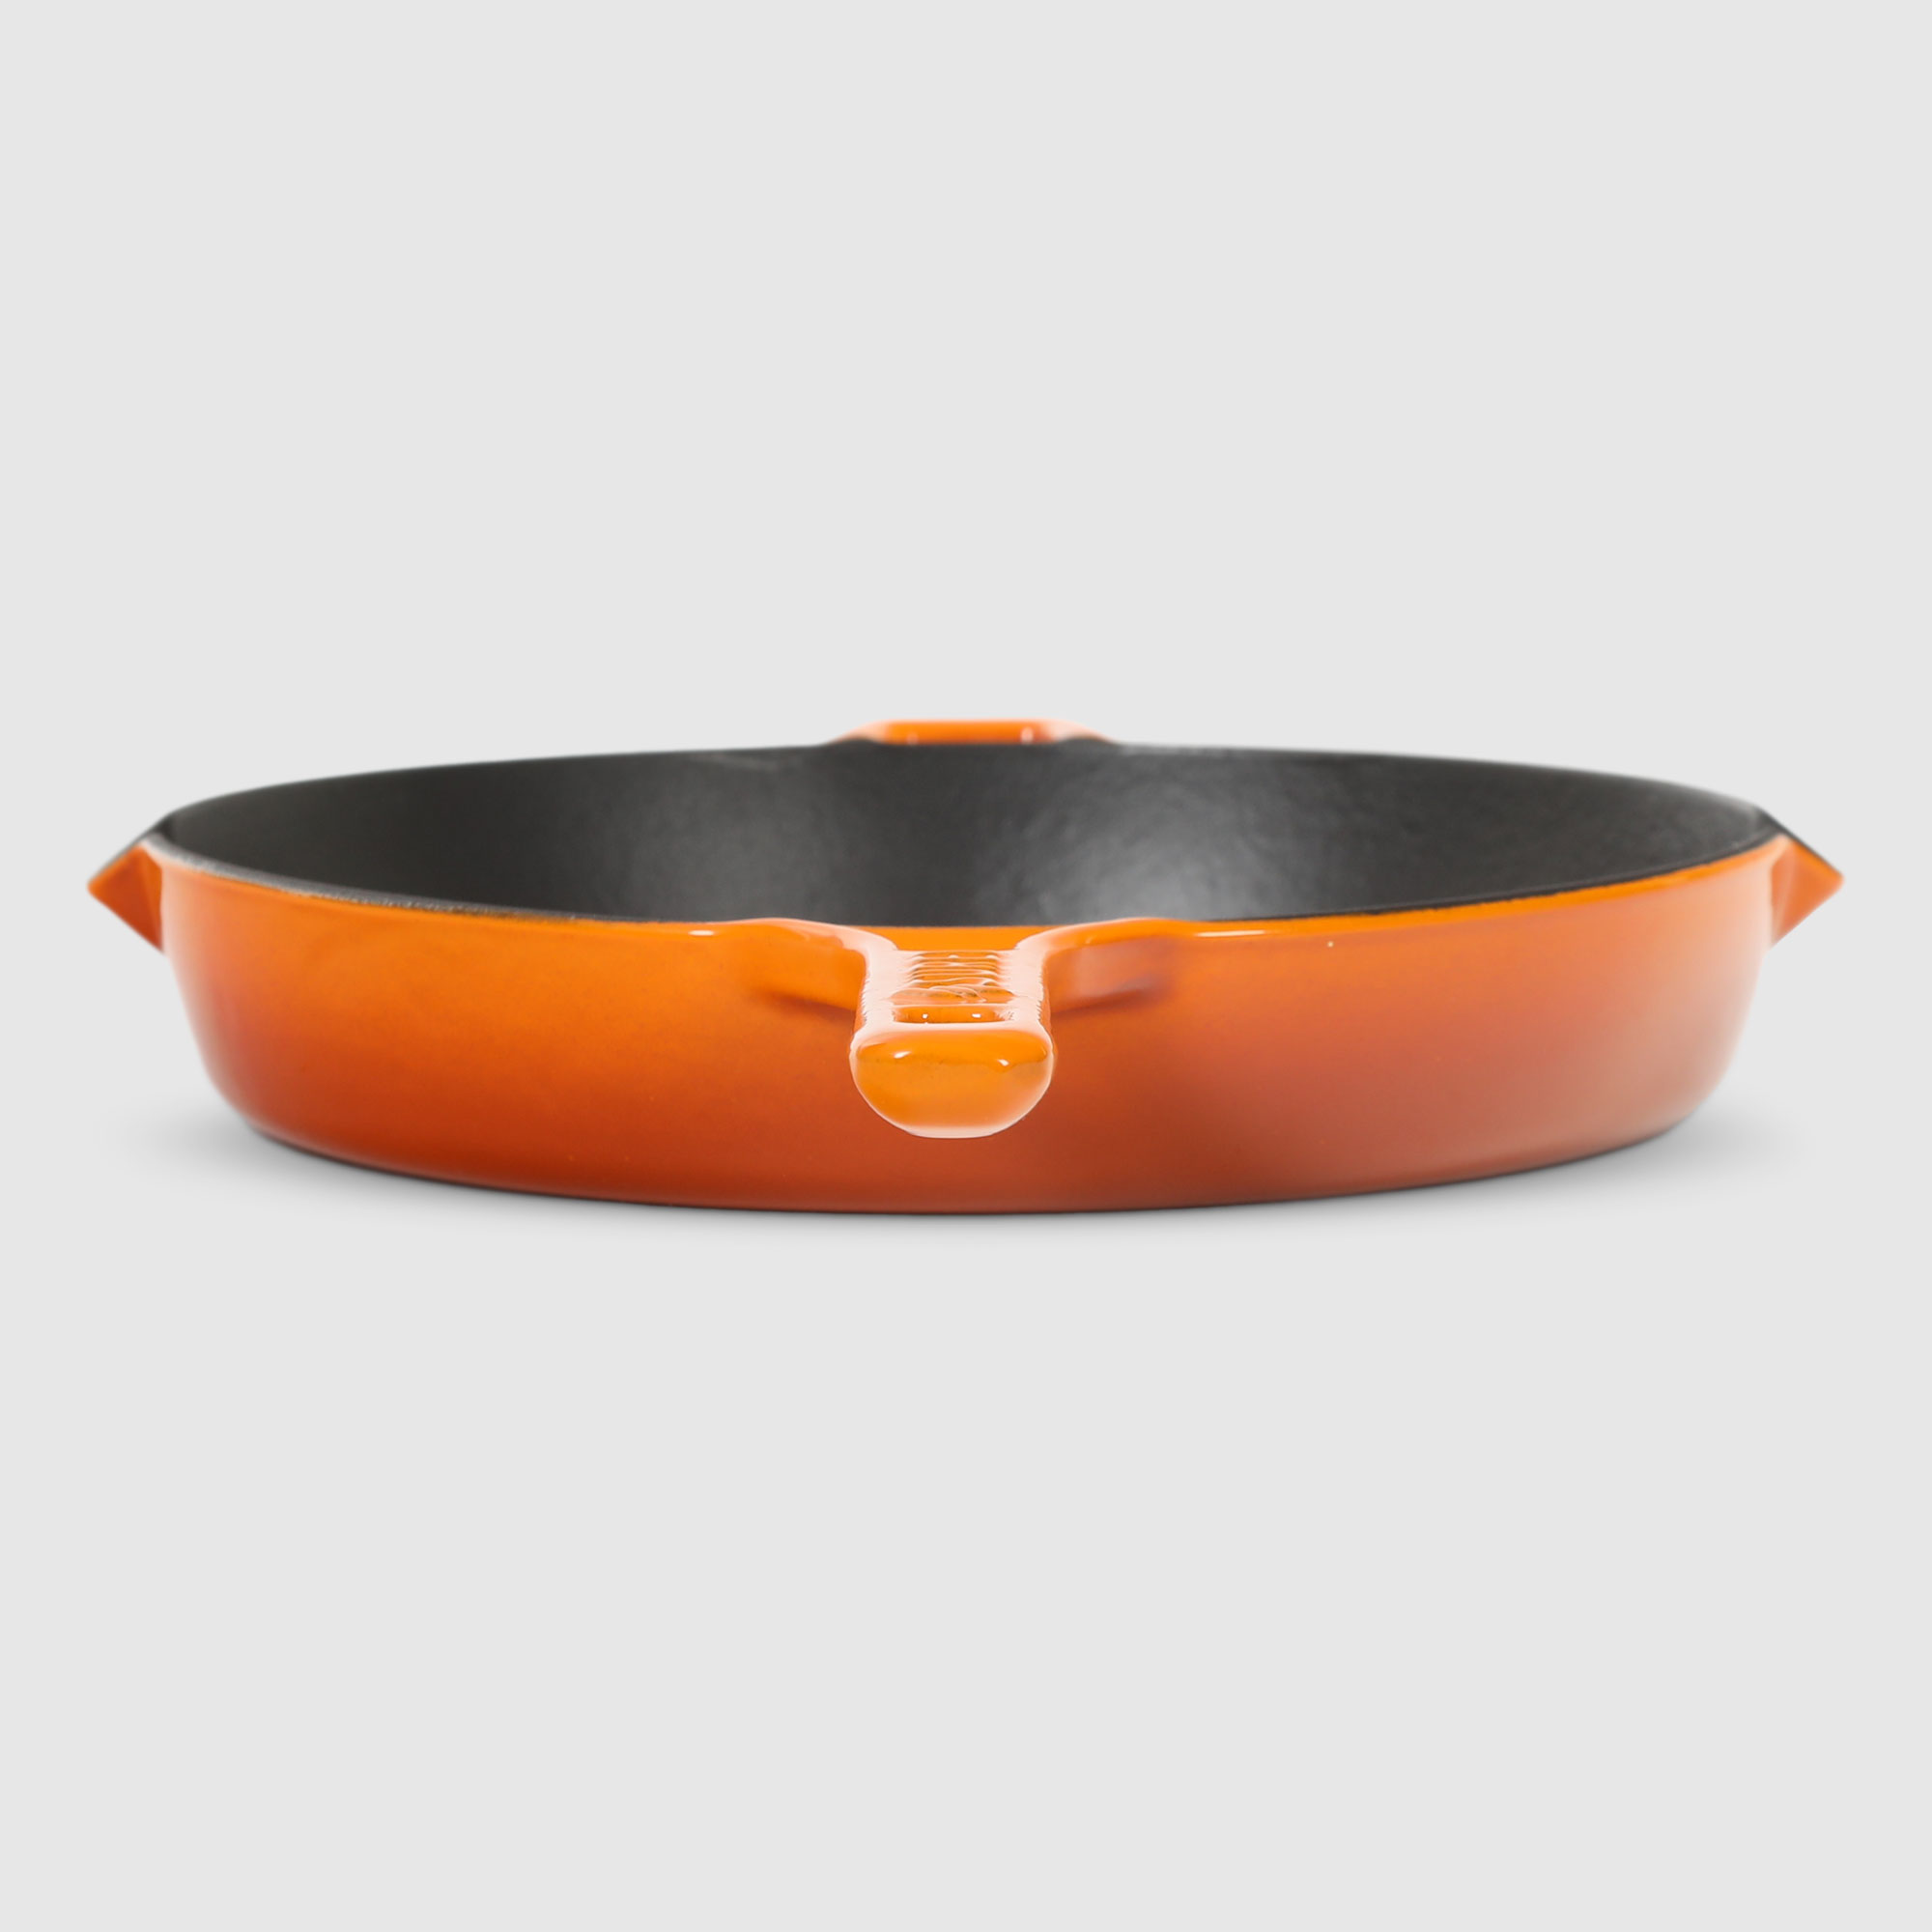 Сковорода-гриль Surel Convex 26 см оранжевая, цвет оранжевый - фото 6